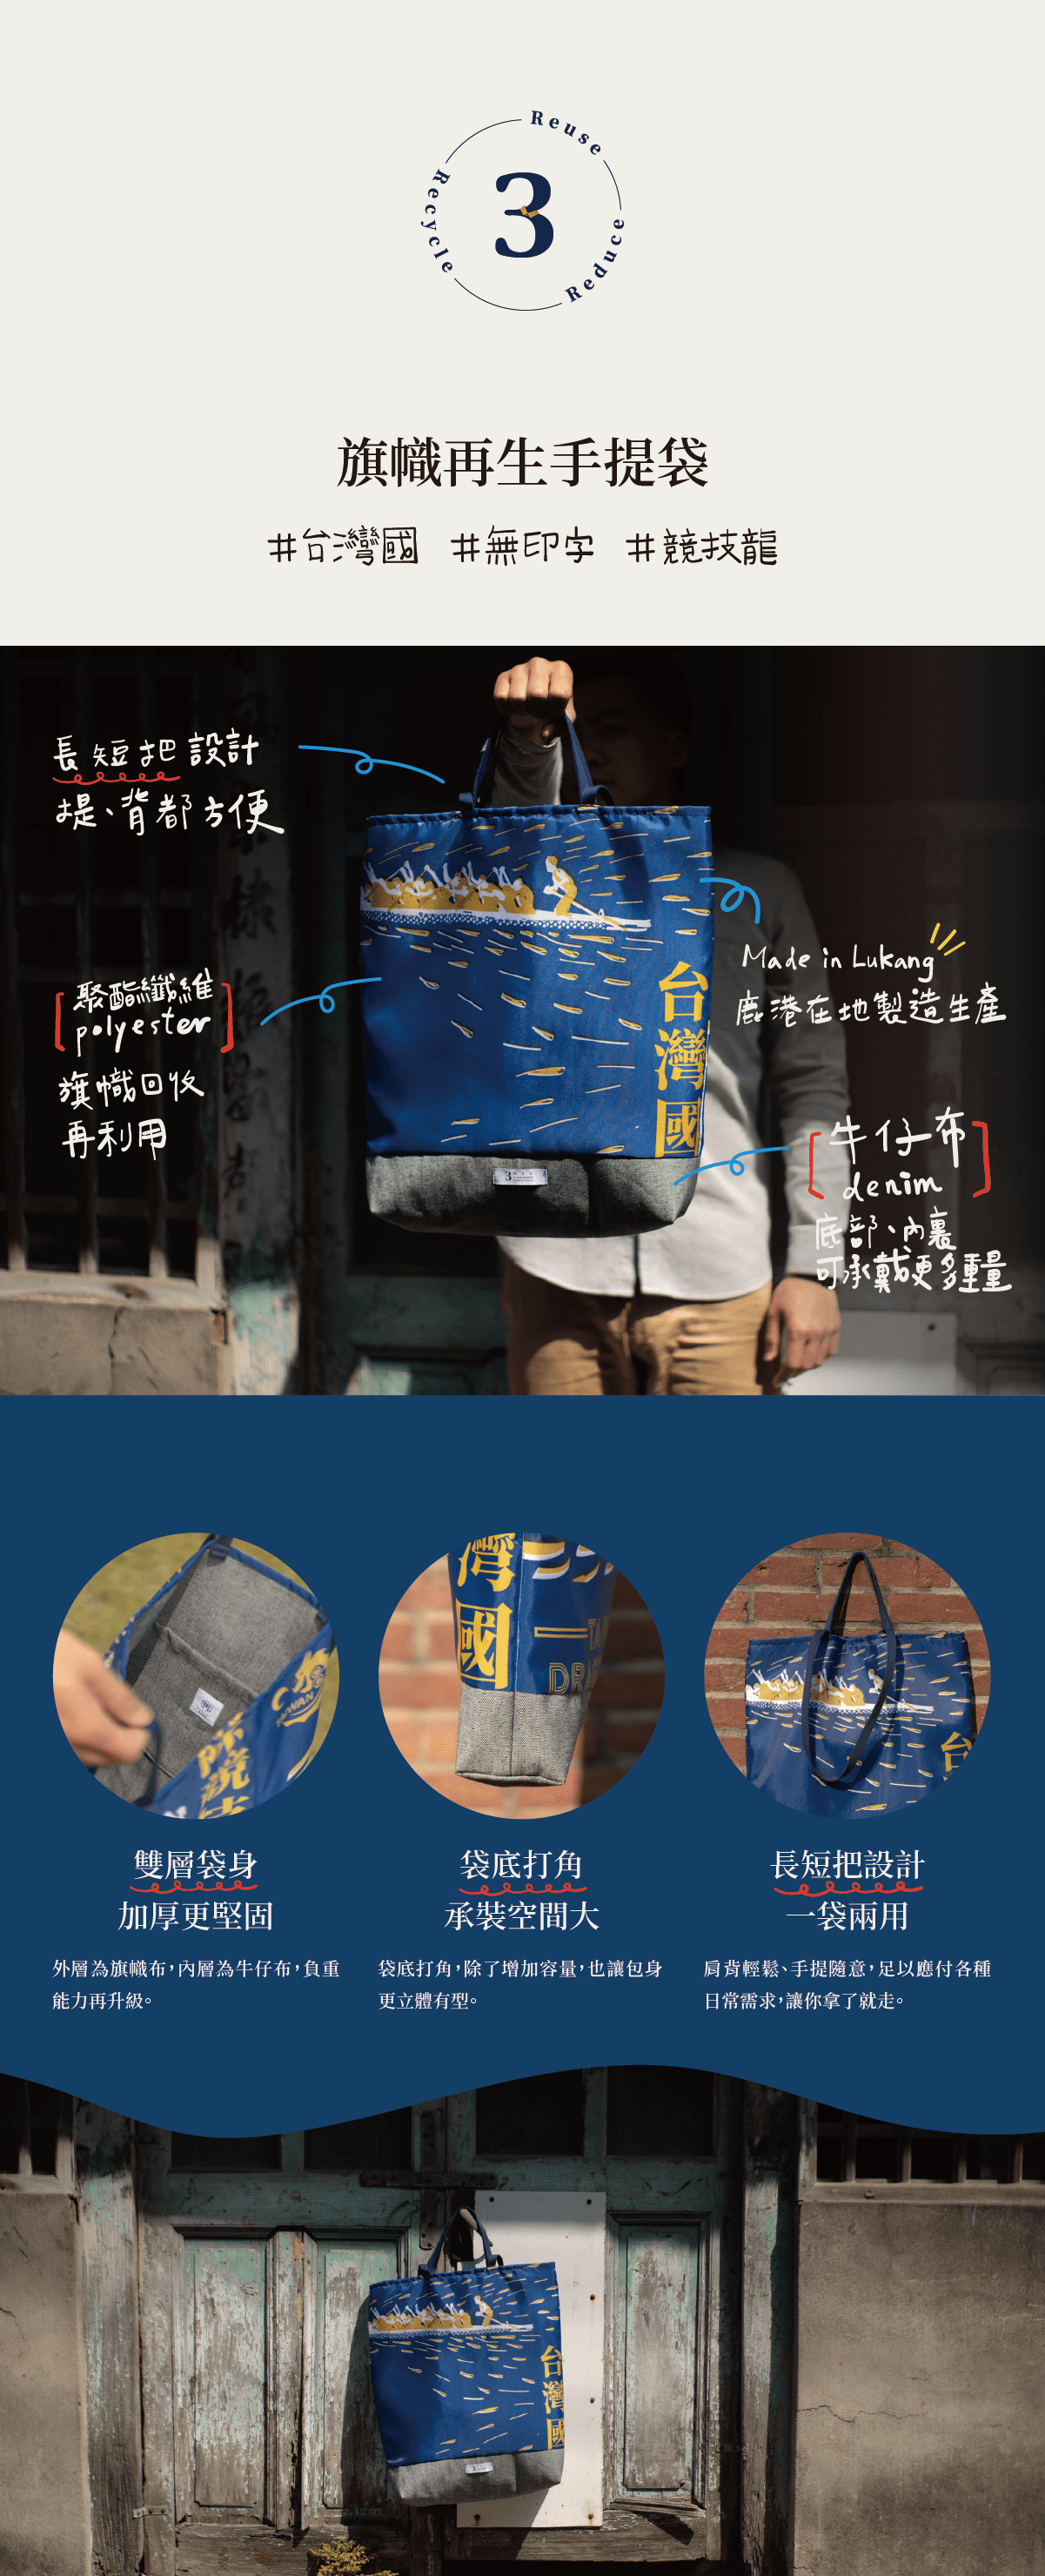 數字3代表參先生工作室，藍色的台灣國旗幟再生手提袋製作是用旗幟回收再利用，有長短把設計一袋兩用，提、背都方便，鹿港在地製造生產，內裏和底部使用牛仔布，雙層袋身加厚更堅固，袋底打角，除了增加容量，也讓包身更立體有型。